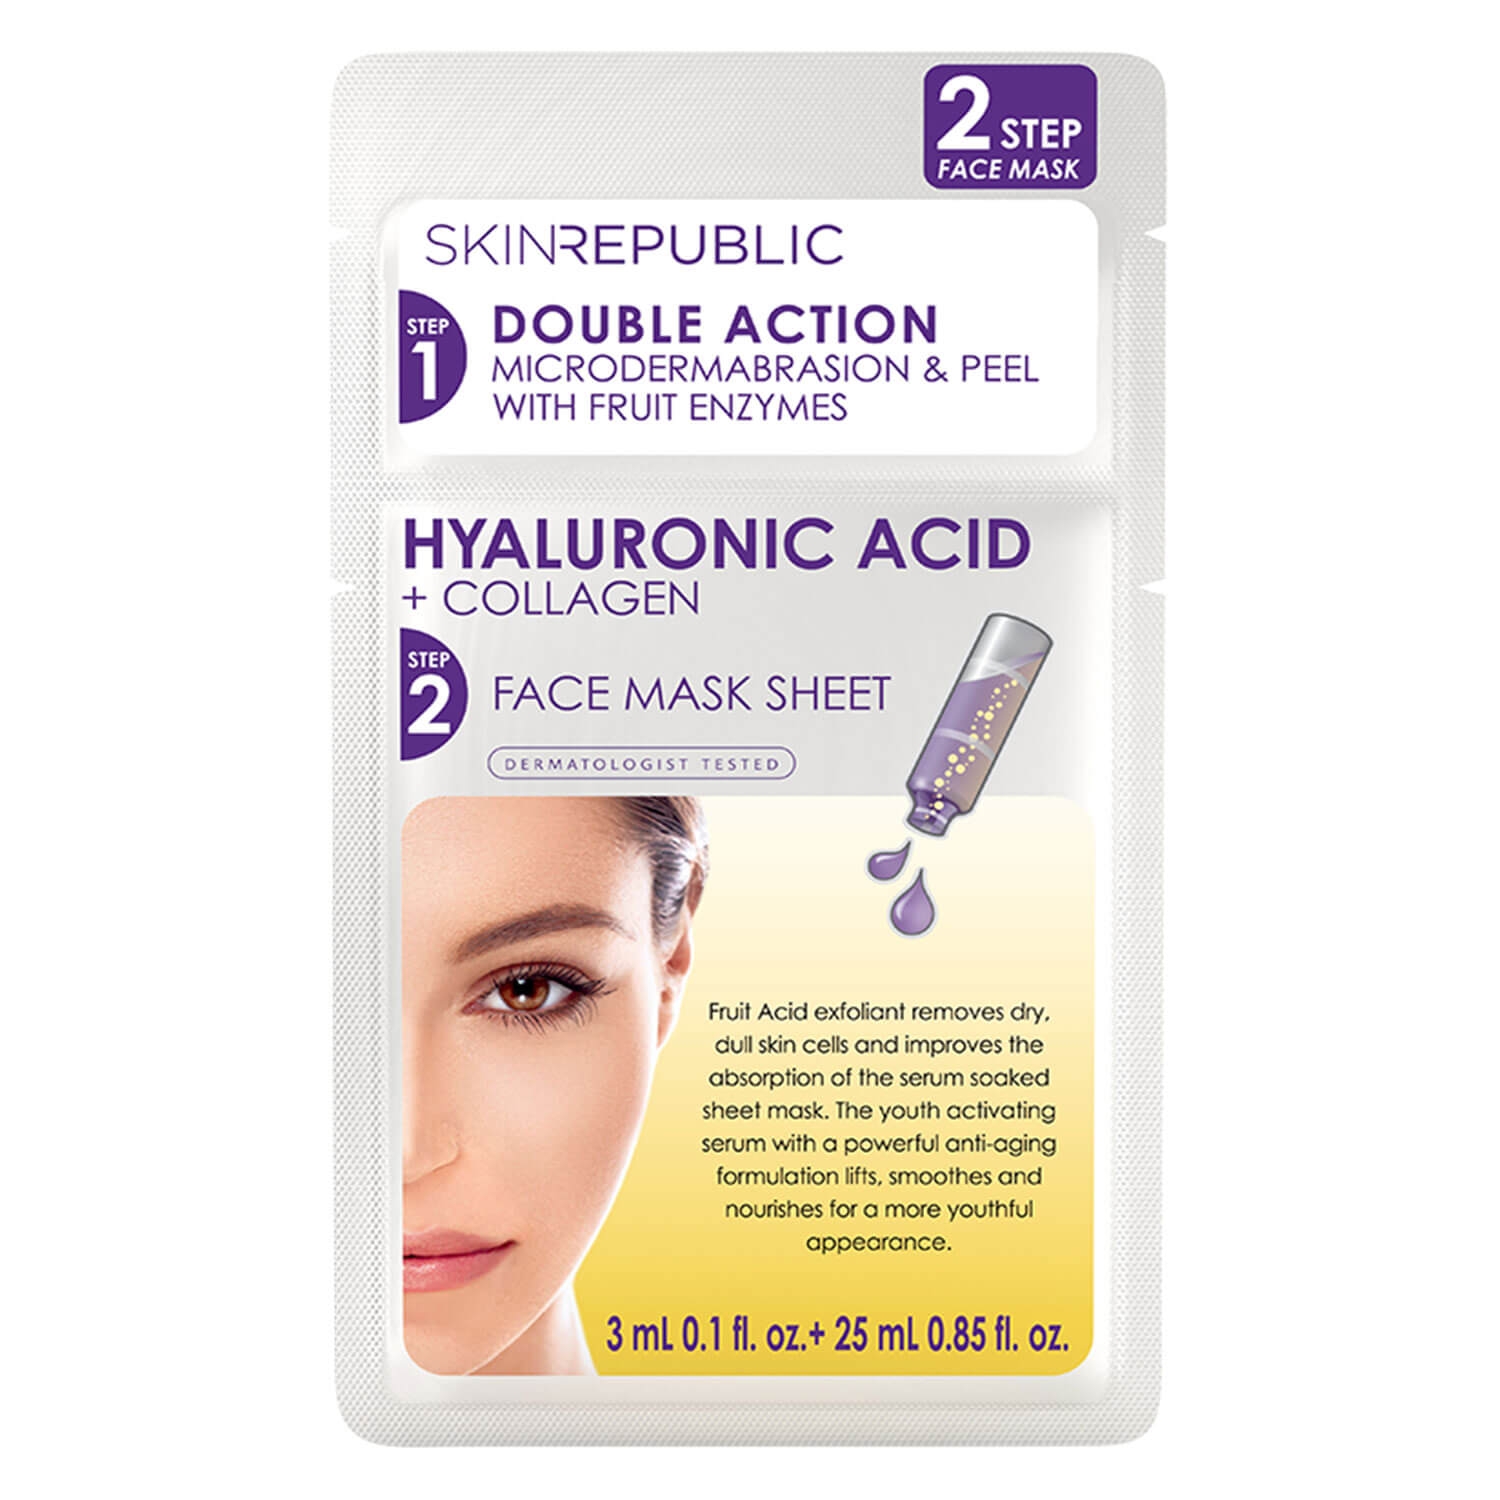 Produktbild von Skin Republic - 2 Step Hyaluronic Acid + Collagen Face Mask